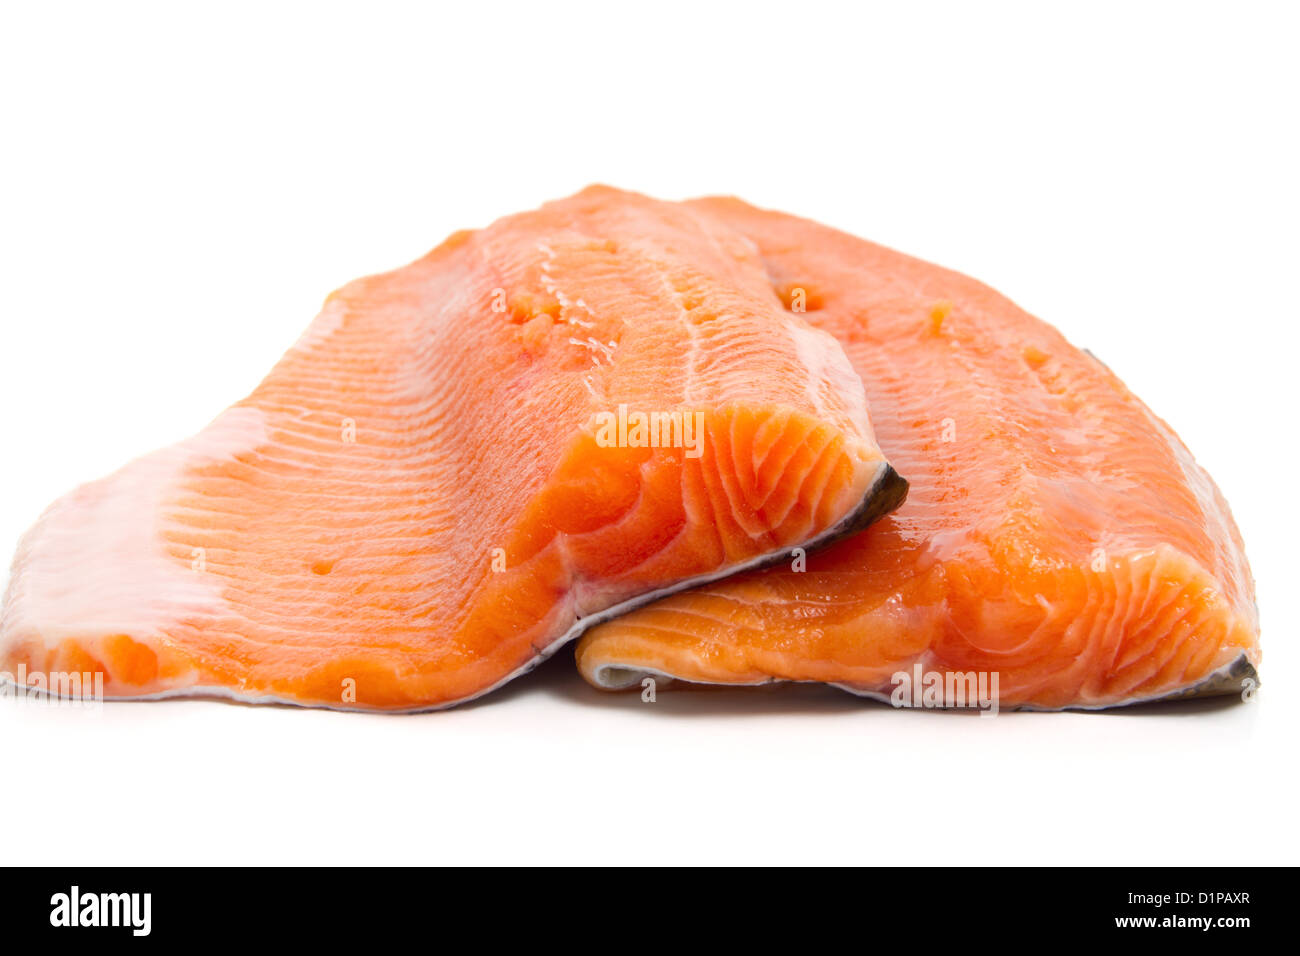 Dettaglio di salmone filetti di trota su sfondo bianco Foto Stock